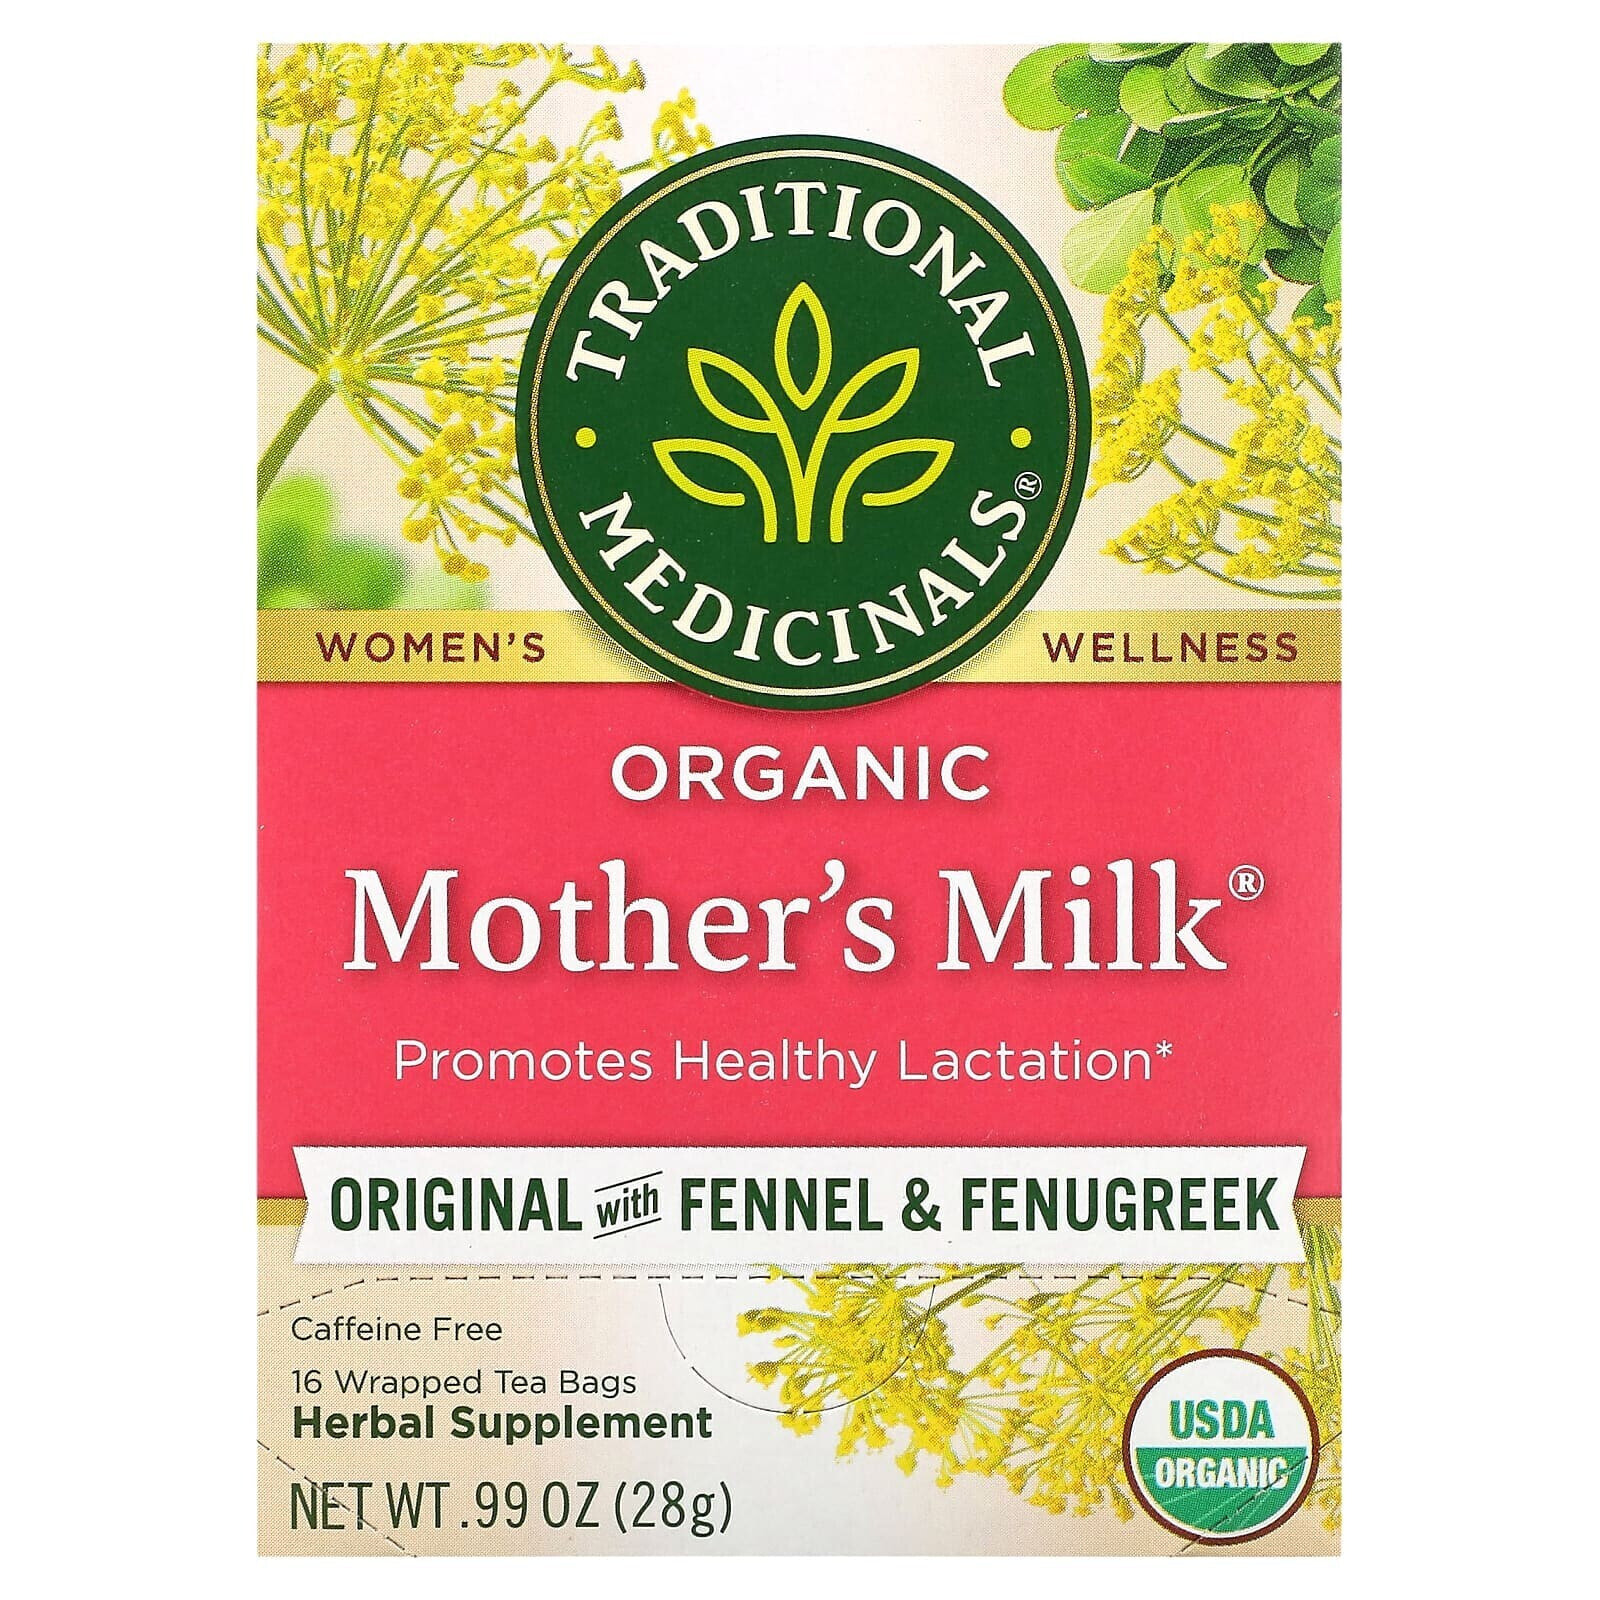 Organic Mother's Milk, Original with Fennel & Fenugreek, Caffeine Free, 16 Wrapped Tea Bags, 0.06 oz (1.75 g) Each